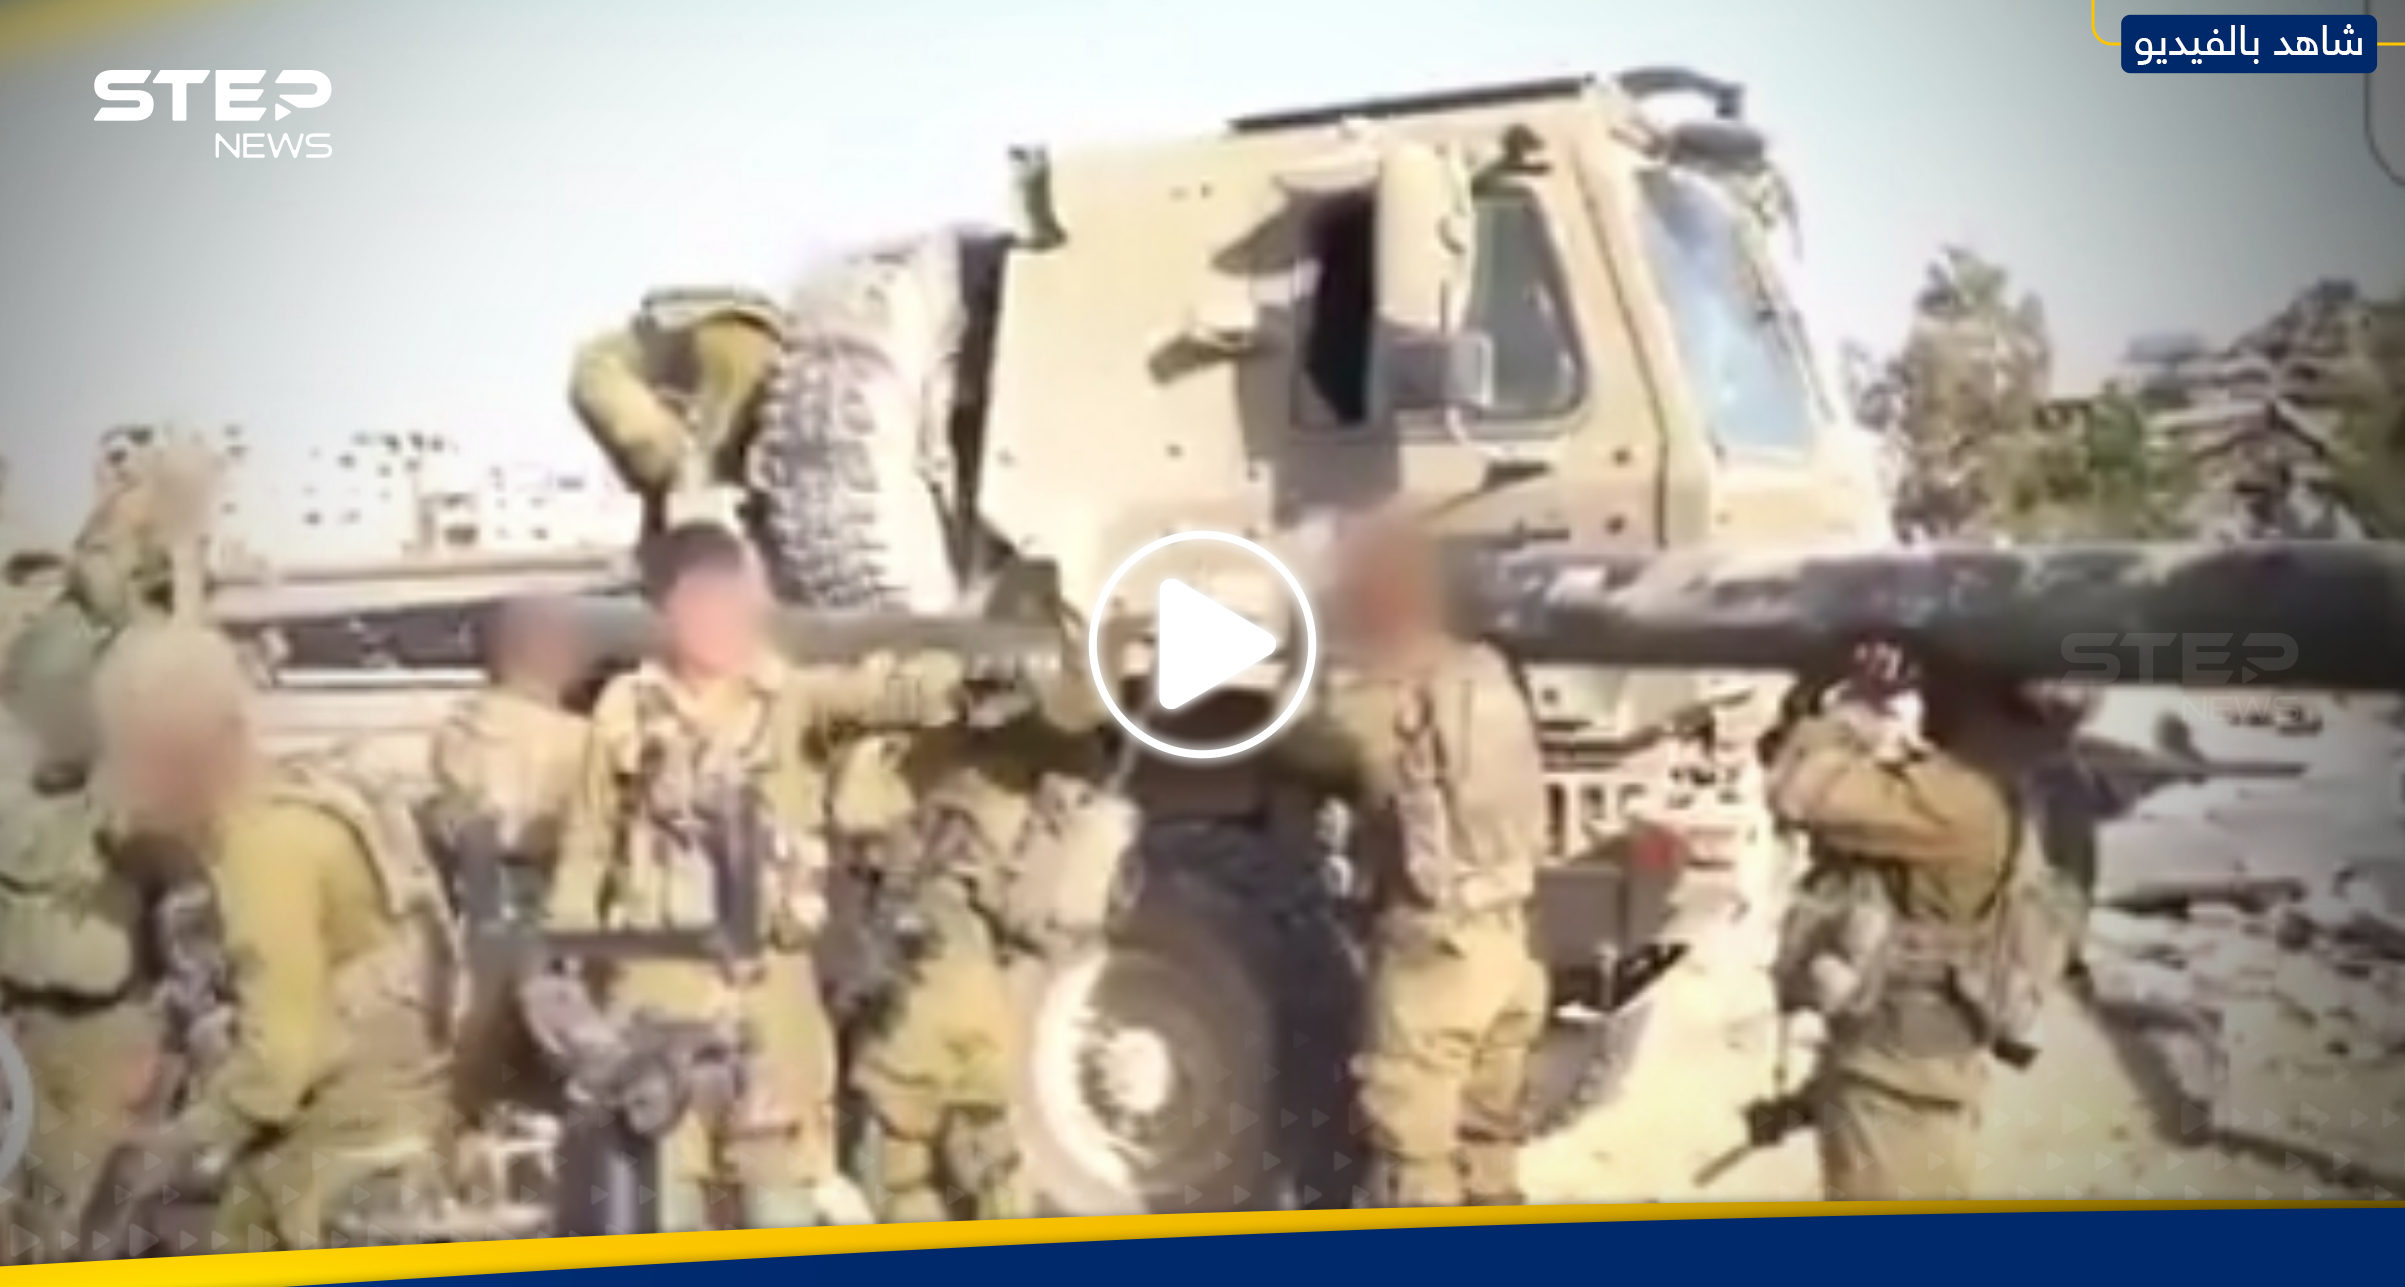 بالفيديو|| الجيش الإسرائيلي ينشر مشاهد لما وجده بأحد مخازن الفصائل الفلسطينية بغزة 